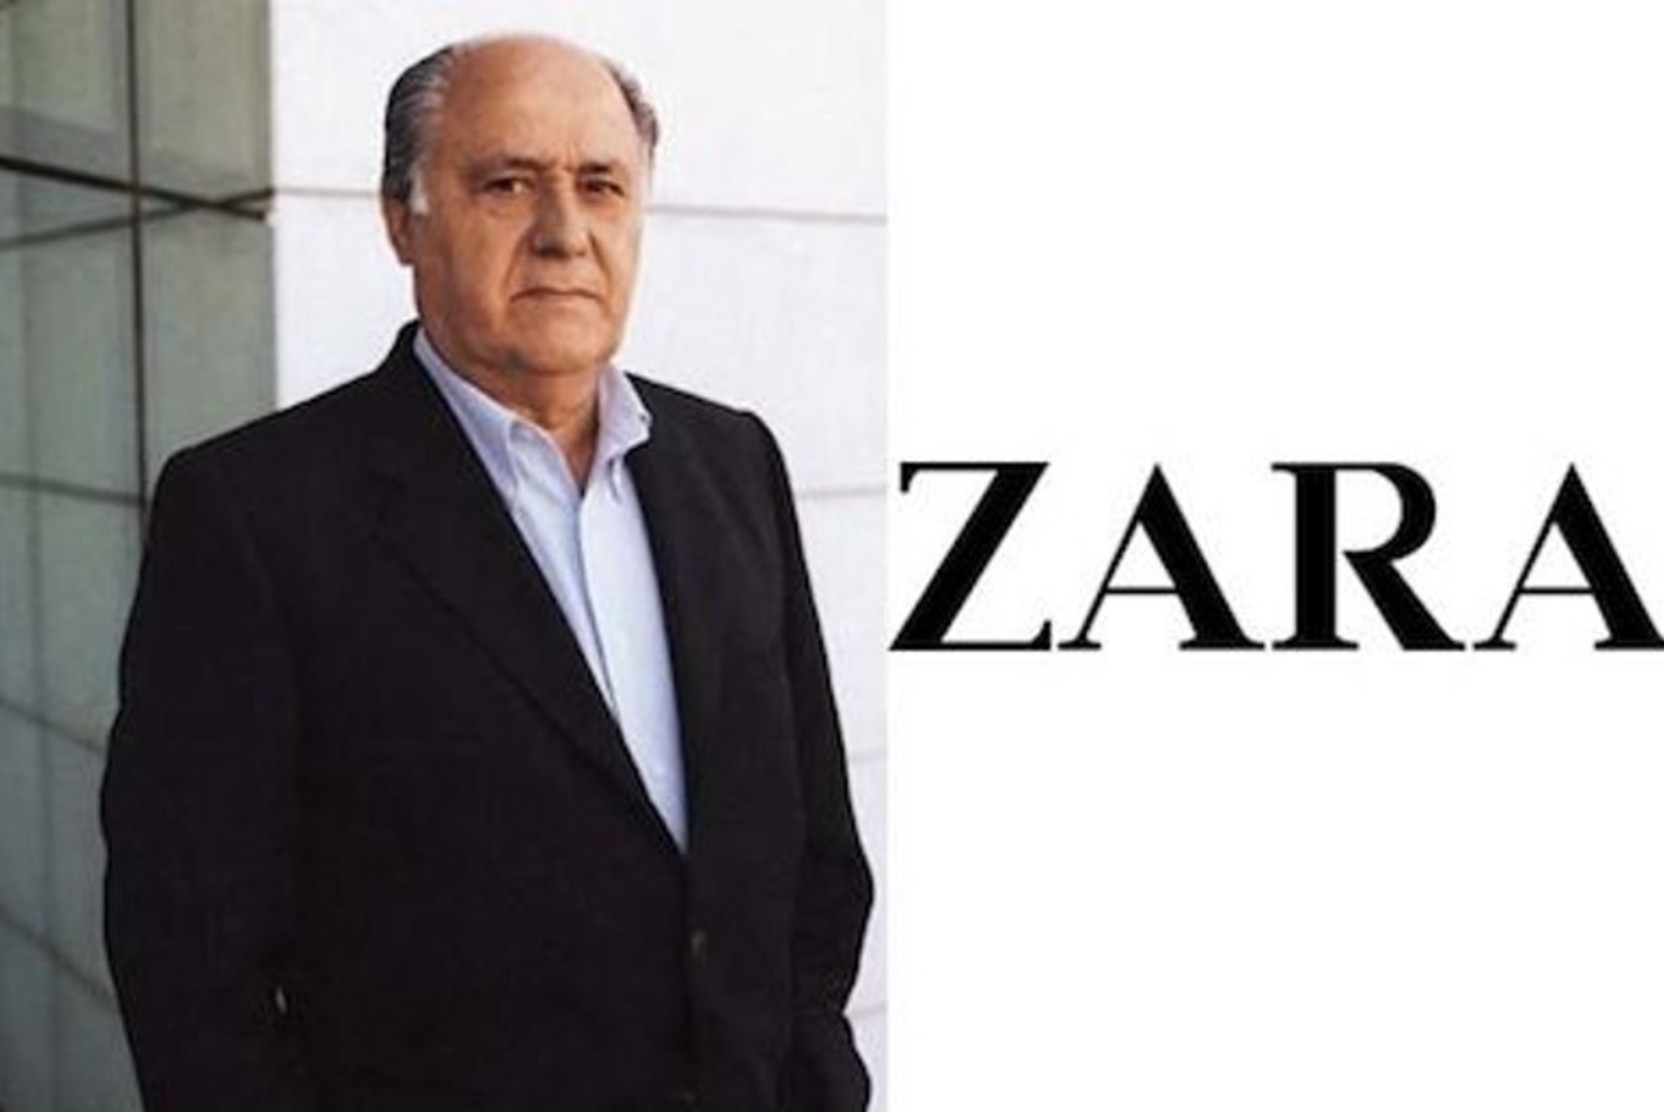 Zara      